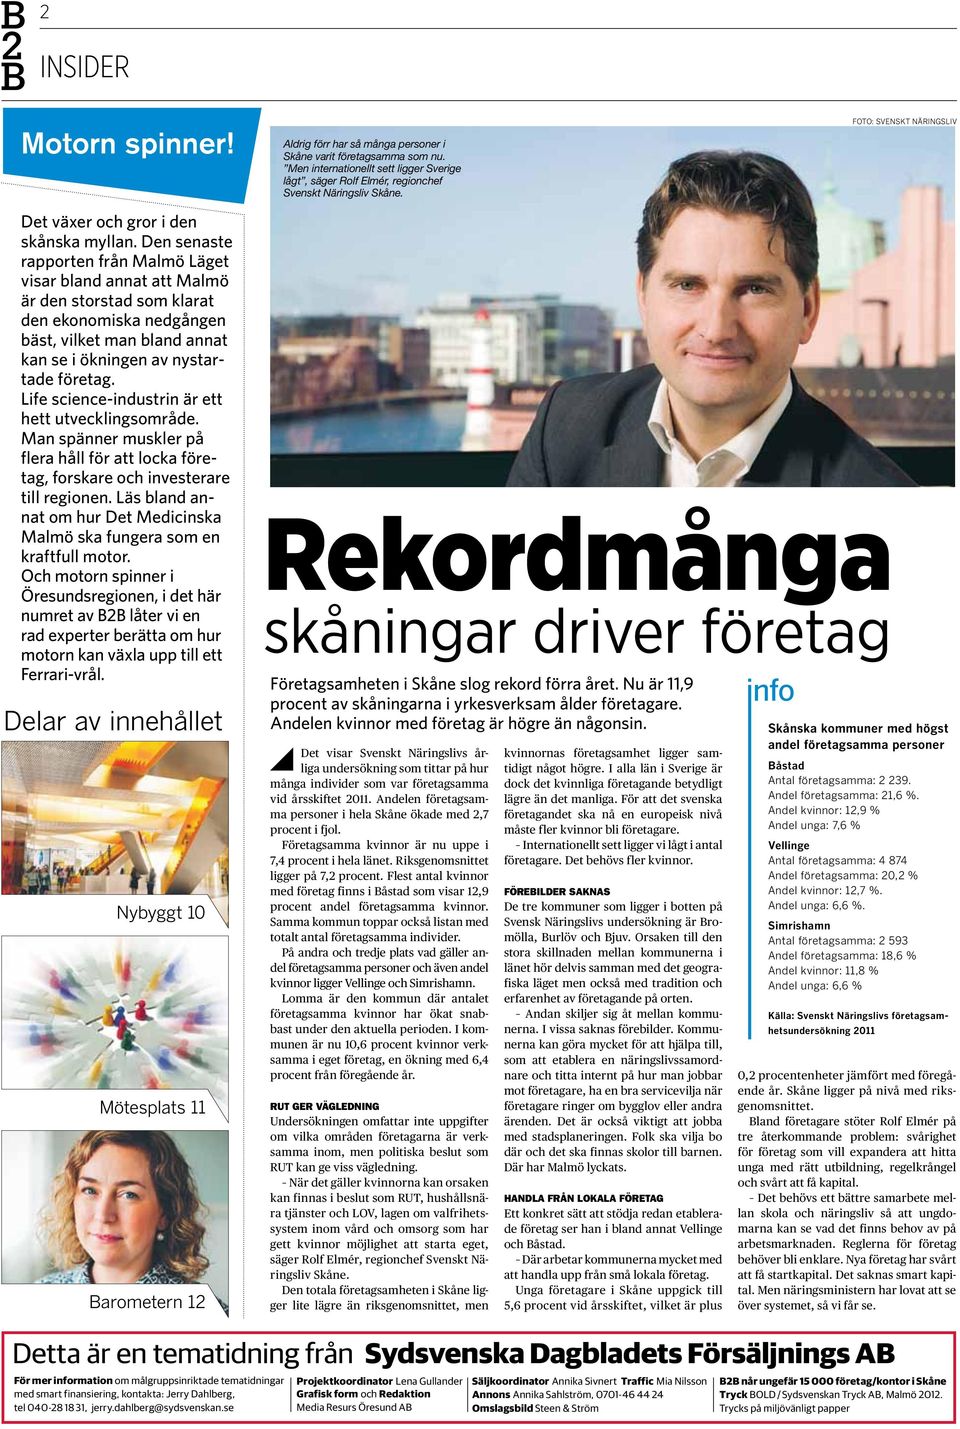 Den senaste rapporten från Malmö Läget visar bland annat att Malmö är den storstad som klarat den ekonomiska nedgången bäst, vilket man bland annat kan se i ökningen av nystartade företag.